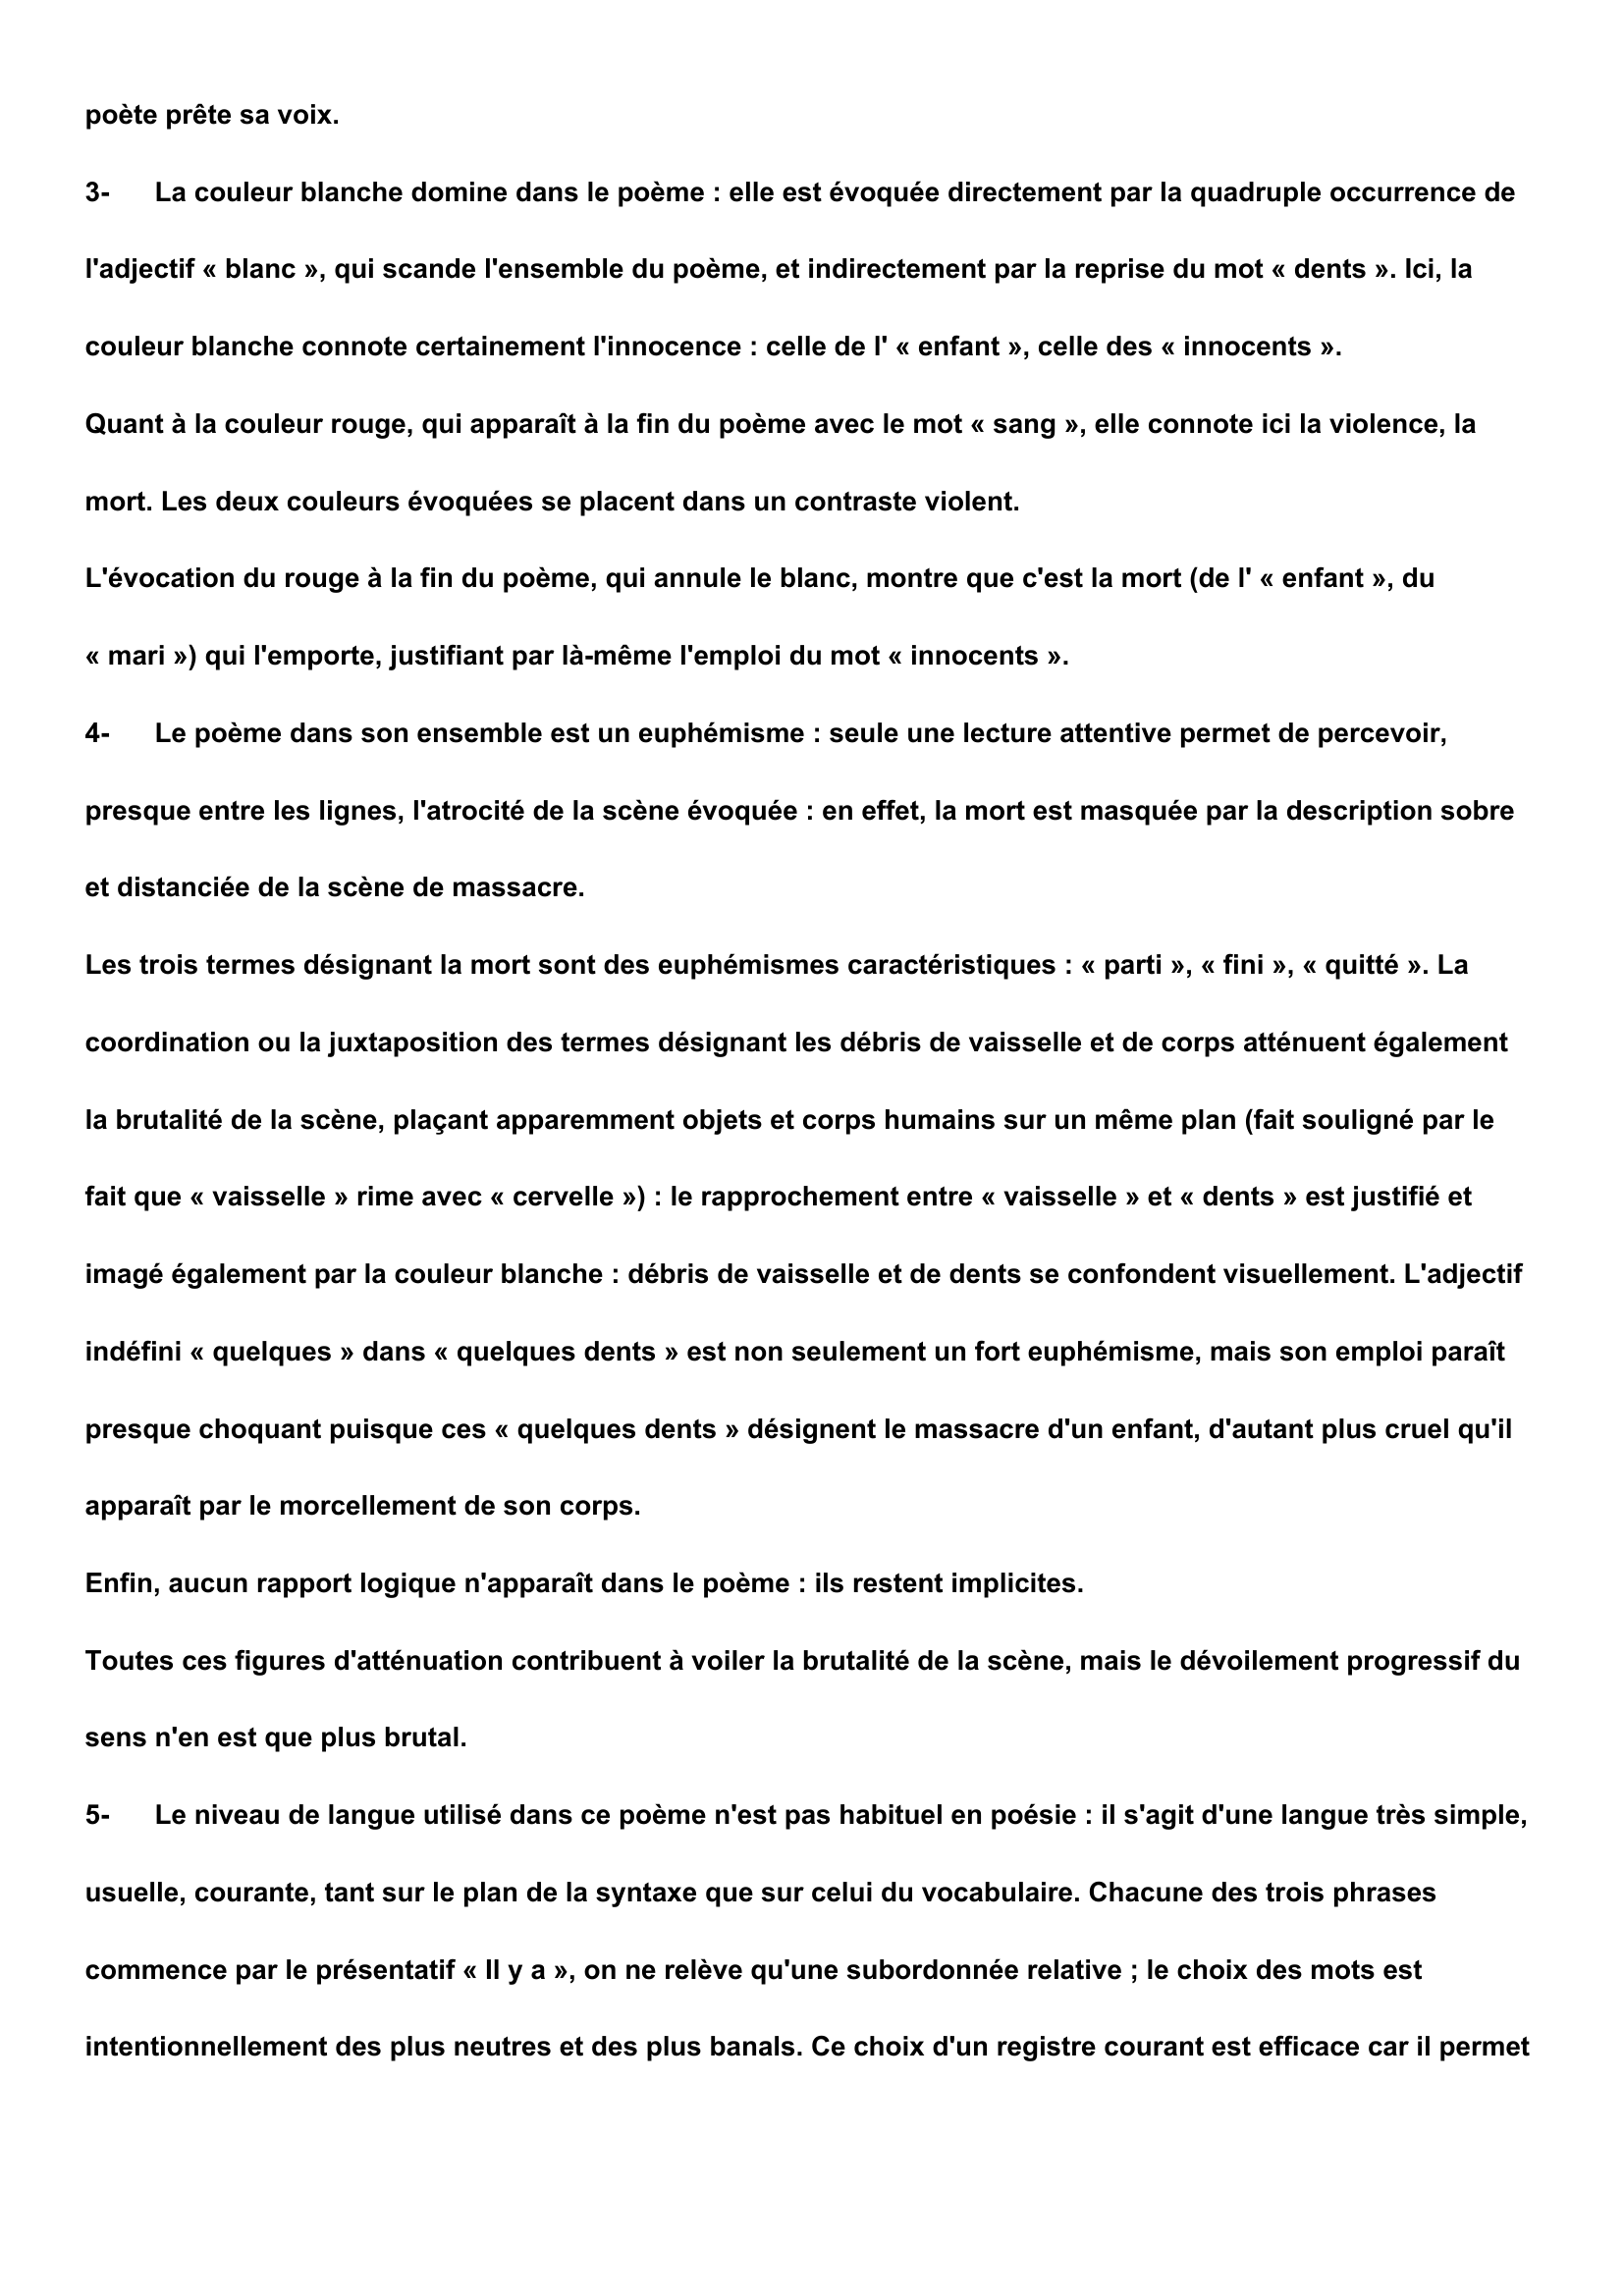 Prévisualisation du document étude du poème "Bretagne" de Guillevic